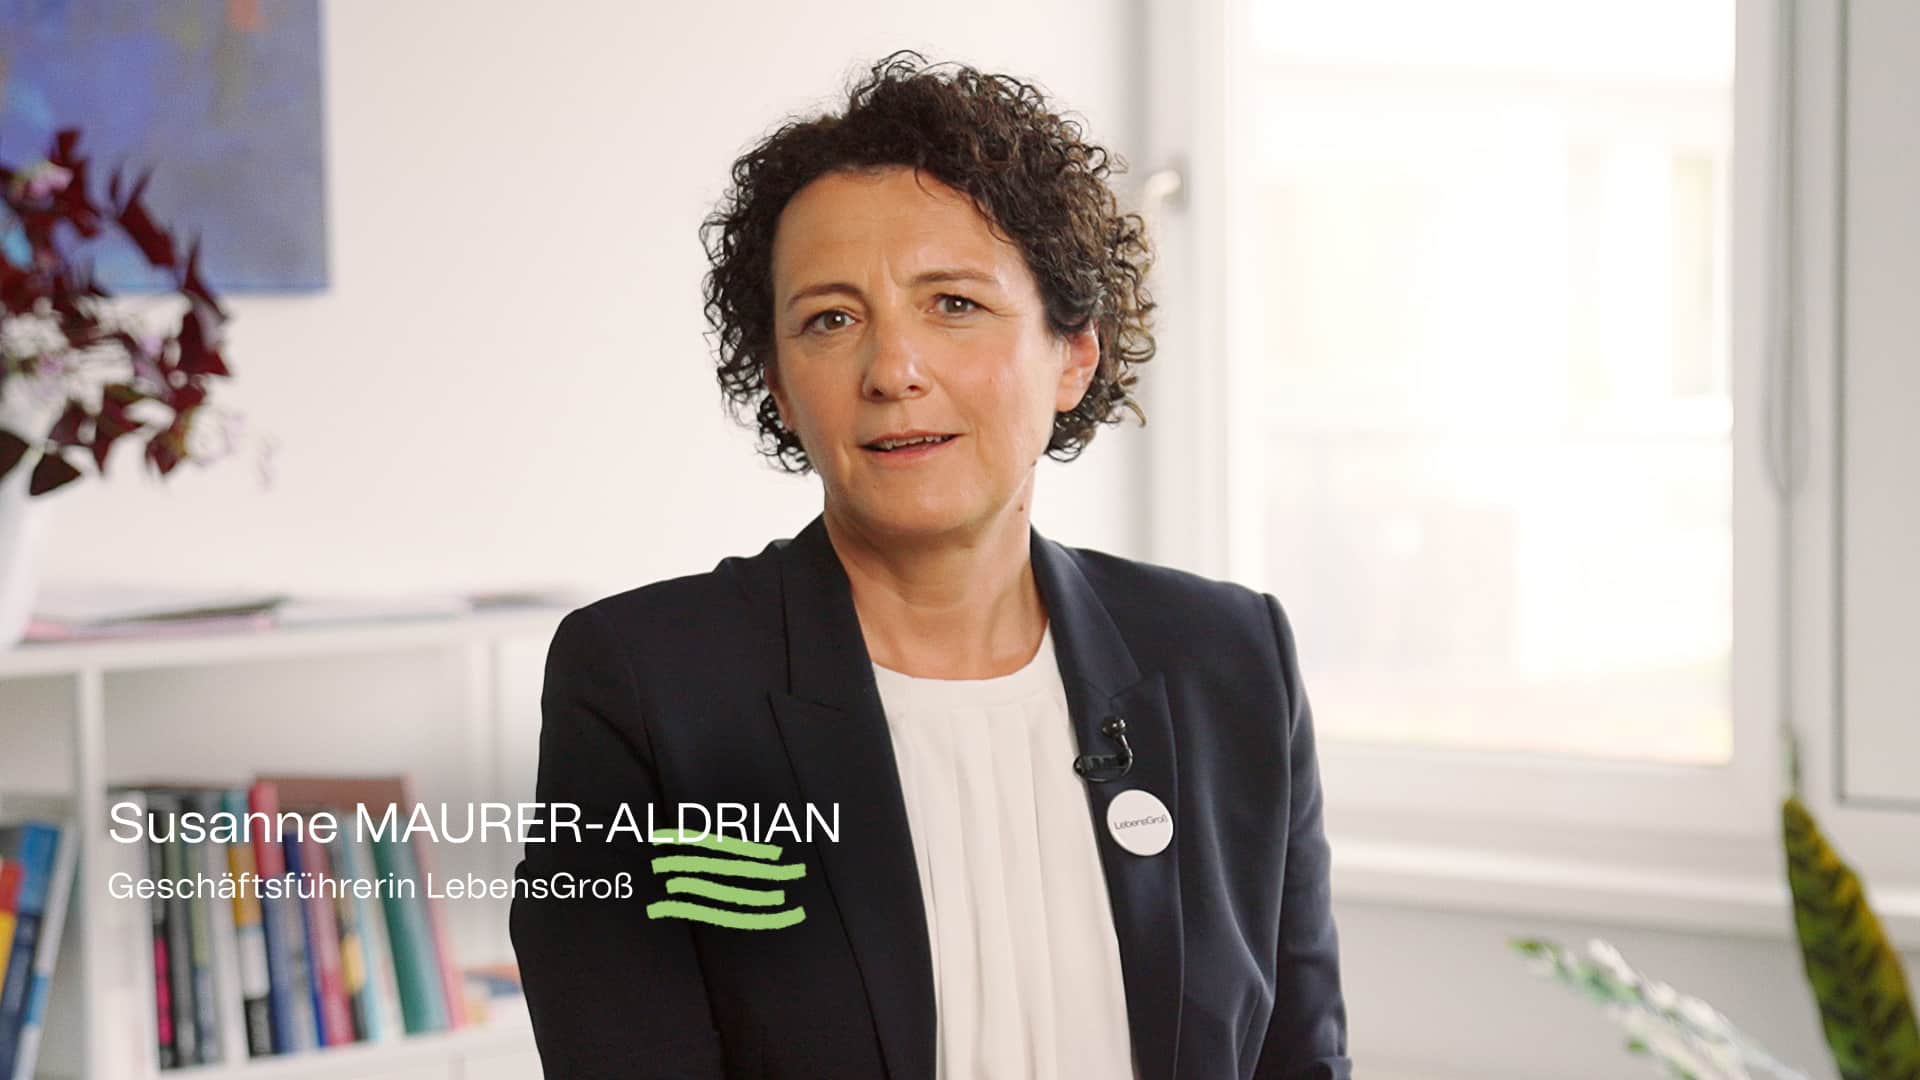 Susanne Maurer-Aldrian, Geschäftsführerin von LebensGroß erklärt in Video, warum es zur Firmenumbenennung kam.